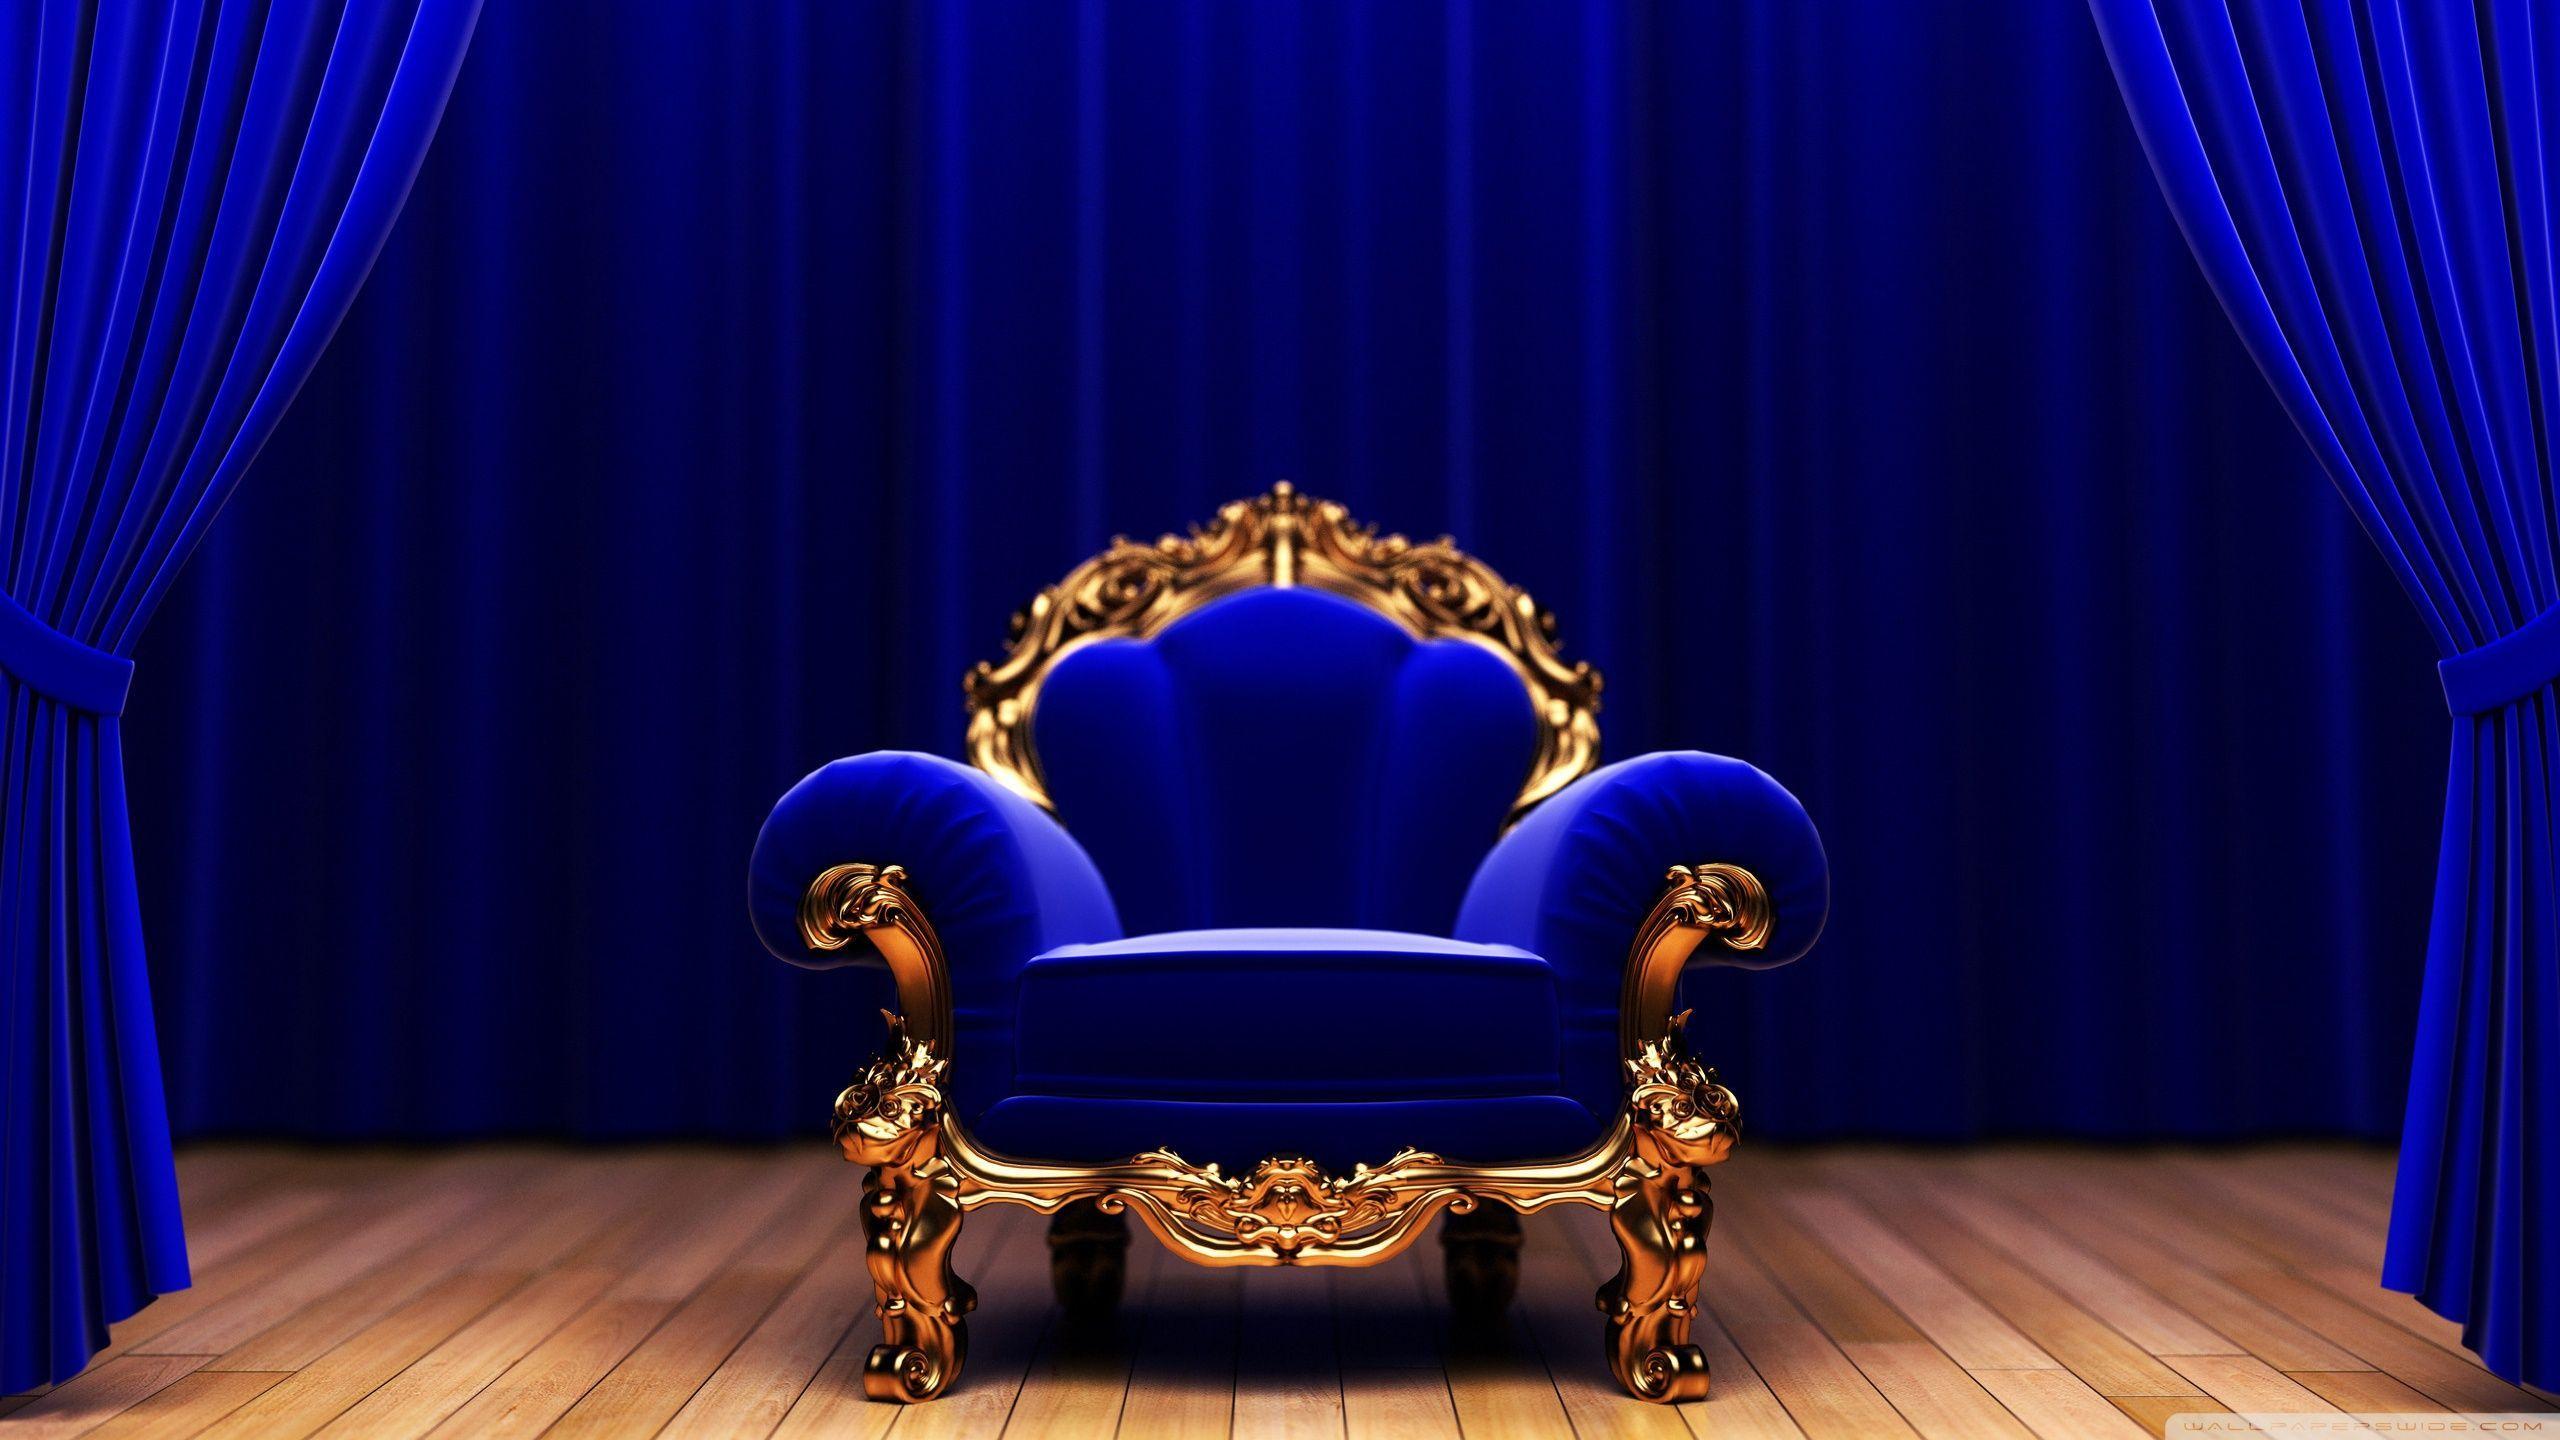 Khám phá hình ảnh ghế vua đẹp đến mê hoặc điều gì chứ? Từ chiếc ghế cổ điển đến những thiết kế hiện đại, tất cả đều khiến bạn chao đảo với sự sang trọng và độc đáo. Đừng bỏ lỡ những bức ảnh này để cảm nhận độ hoàn hảo của những chiếc ghế vua.